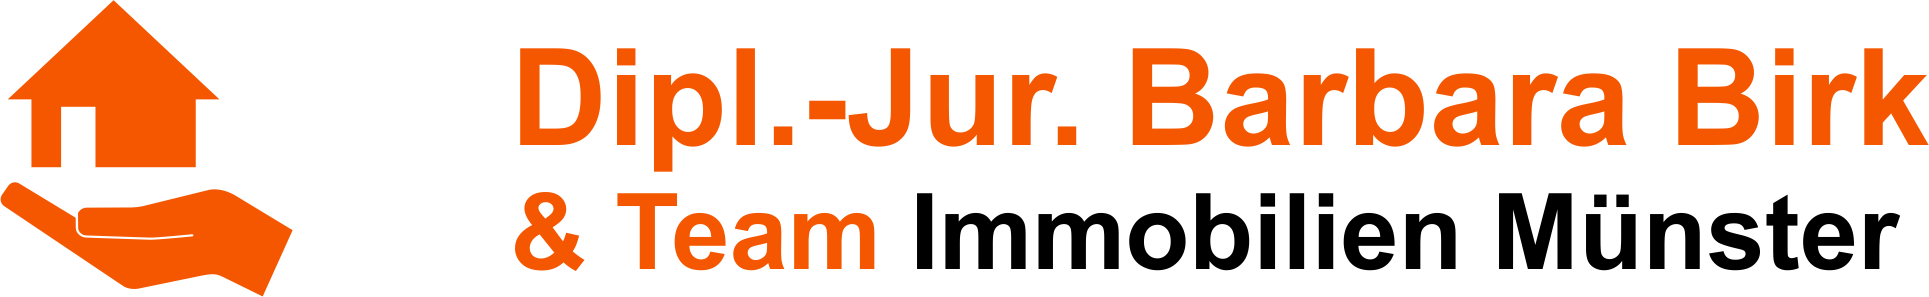 Logo von Birk Barbara Dipl.-Jur. & Team Immobilien